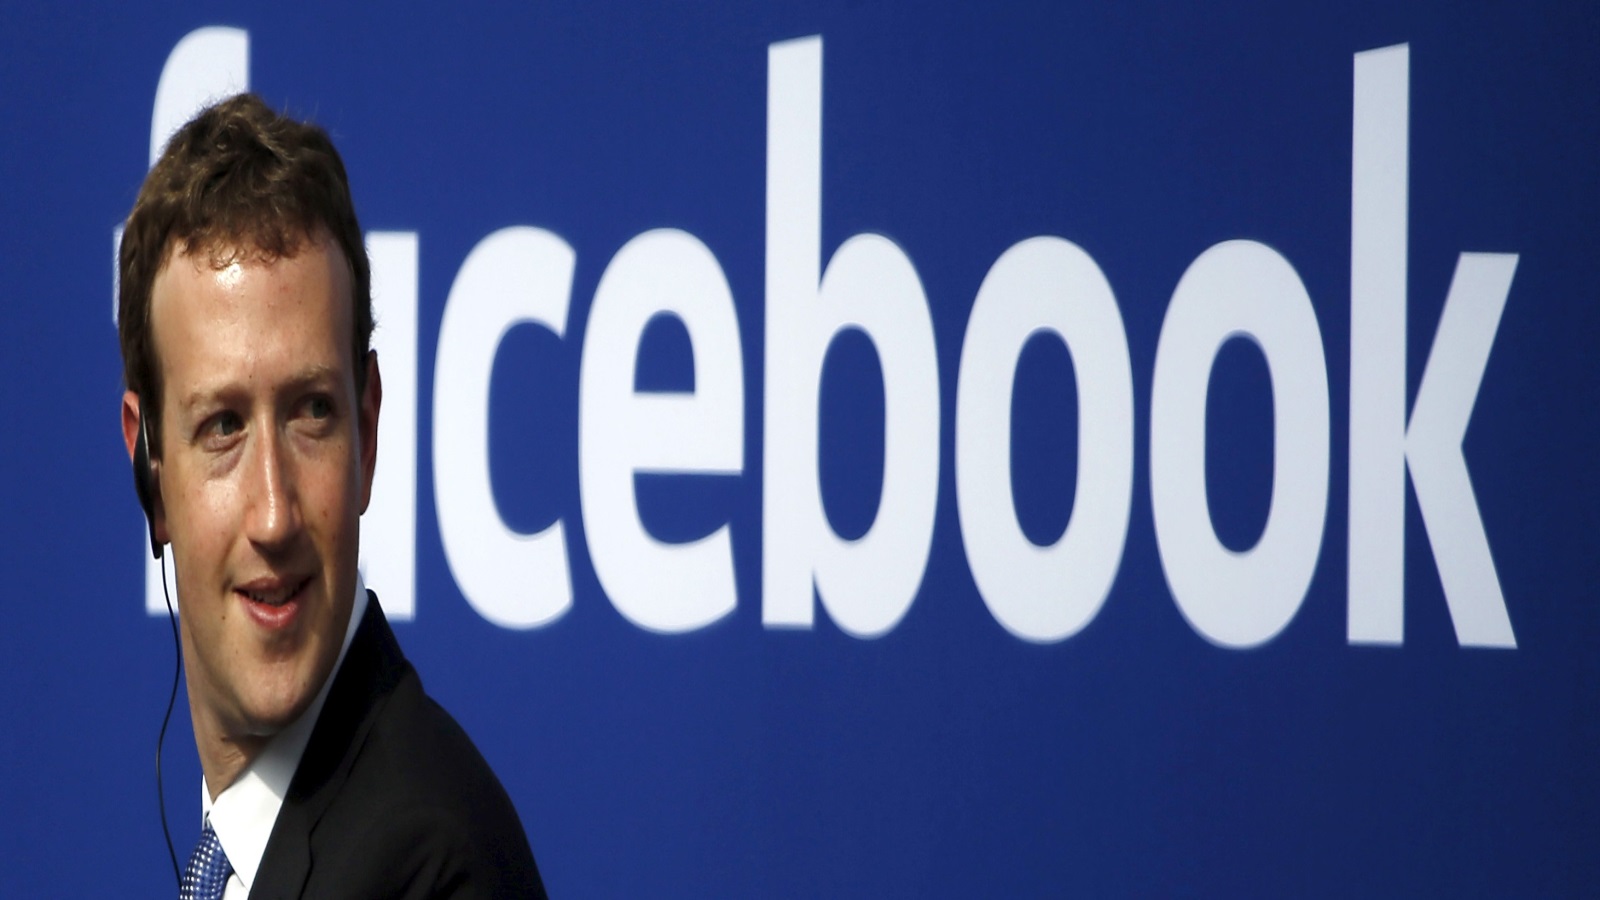 السياسات الجديدة في الفيسبوك ما هي إلا محاولة ابتزاز ناعم قد تنجو منها الشركات الكبرى القادرة على زيادة ما تخصصه من ميزانية للتسويق الإلكتروني